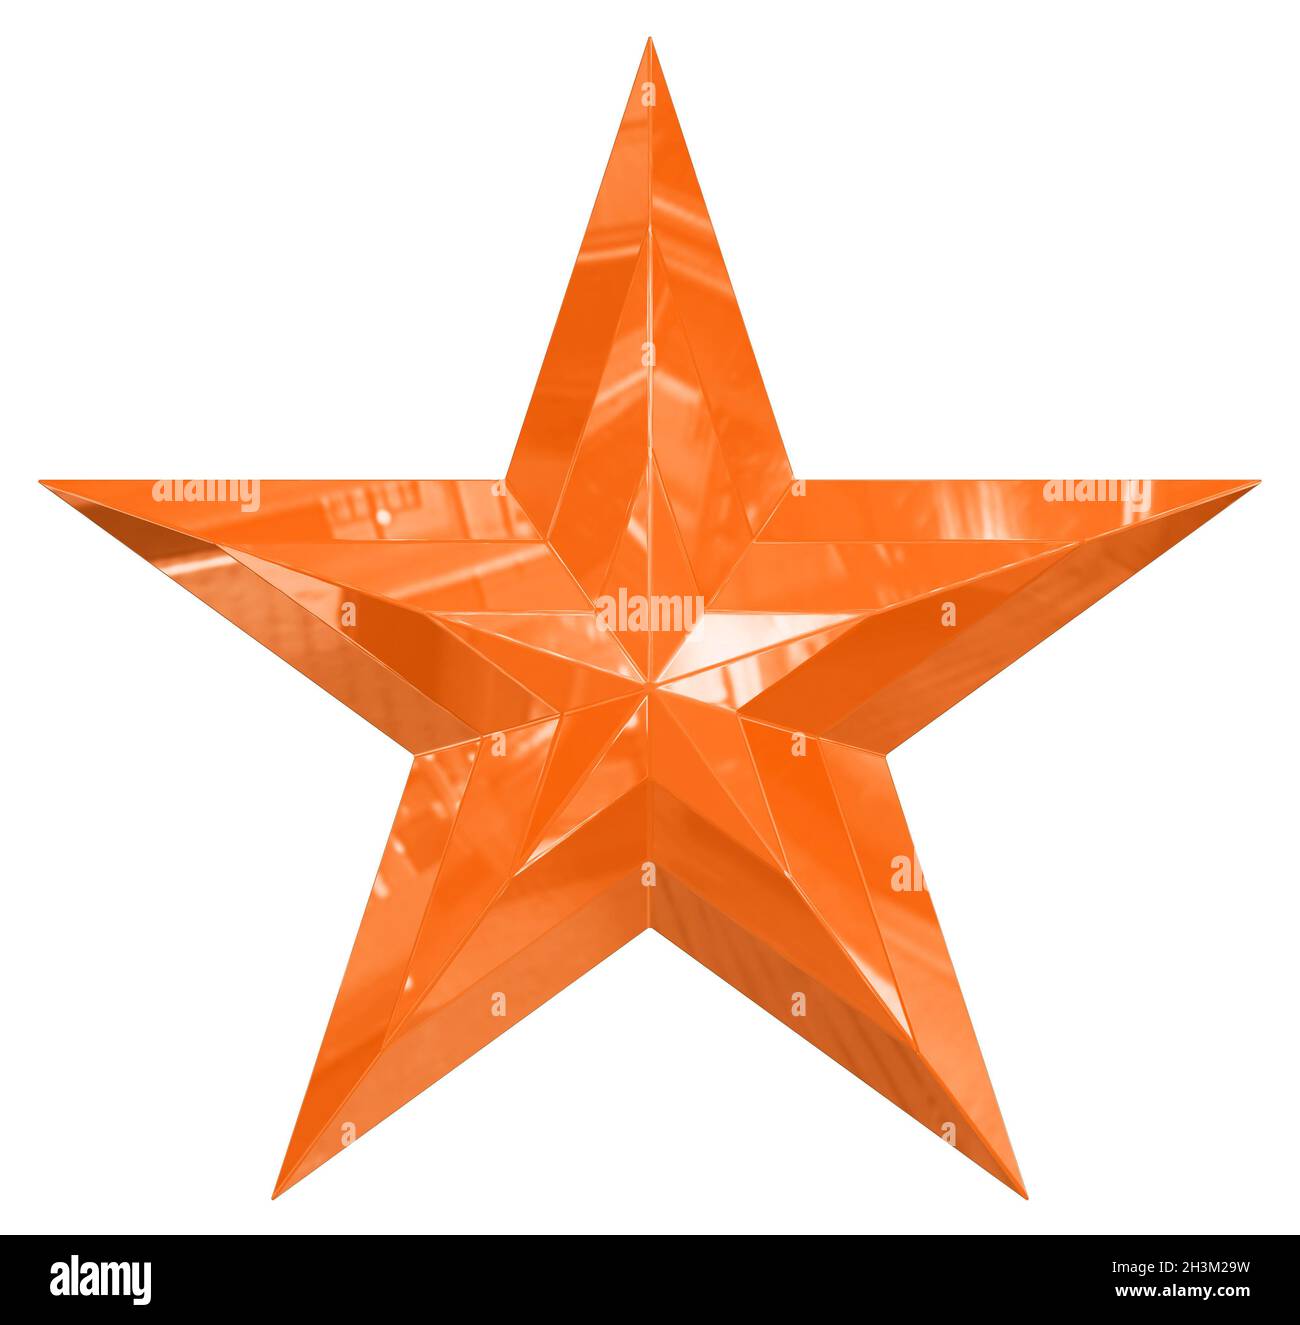 5-Punkt-Stern - Weihnachtsstern - orange einzeln isoliert auf weißem Hintergrund - 3d-Rendering Stockfoto